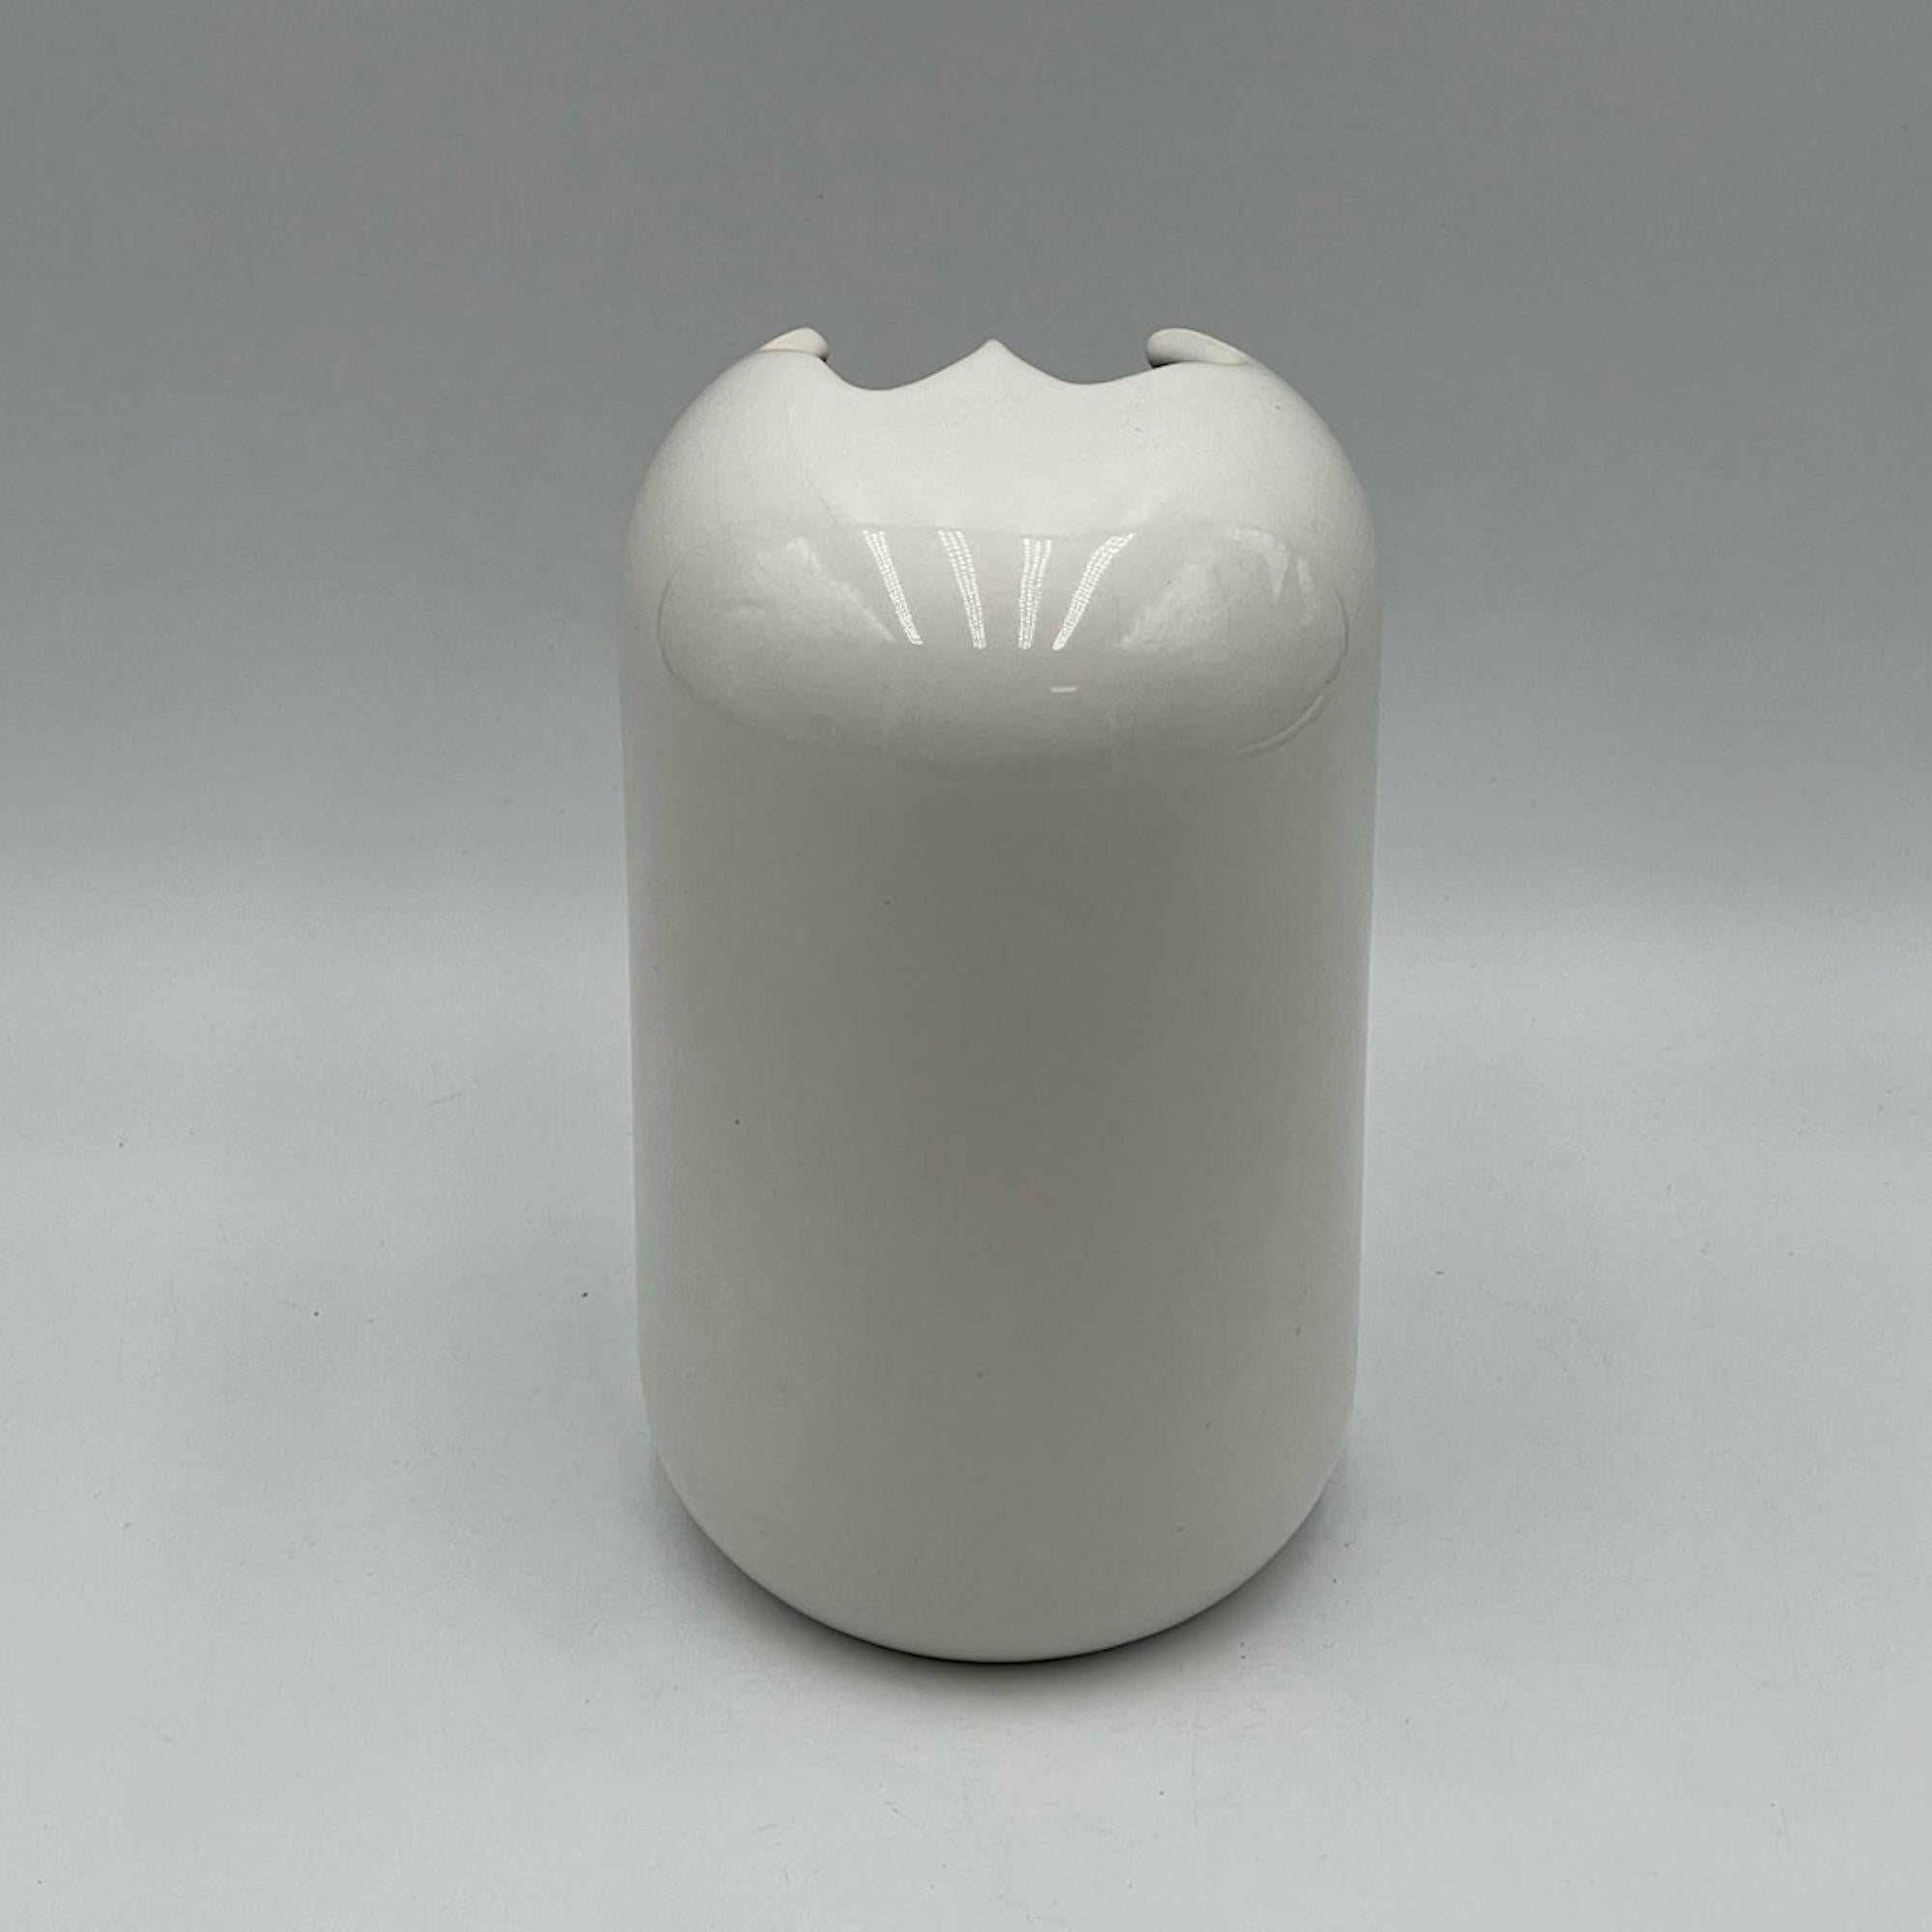 Unusual Space Age Ceramic Vase by Gabbianelli Sezione Design, Italy, 1970s For Sale 1